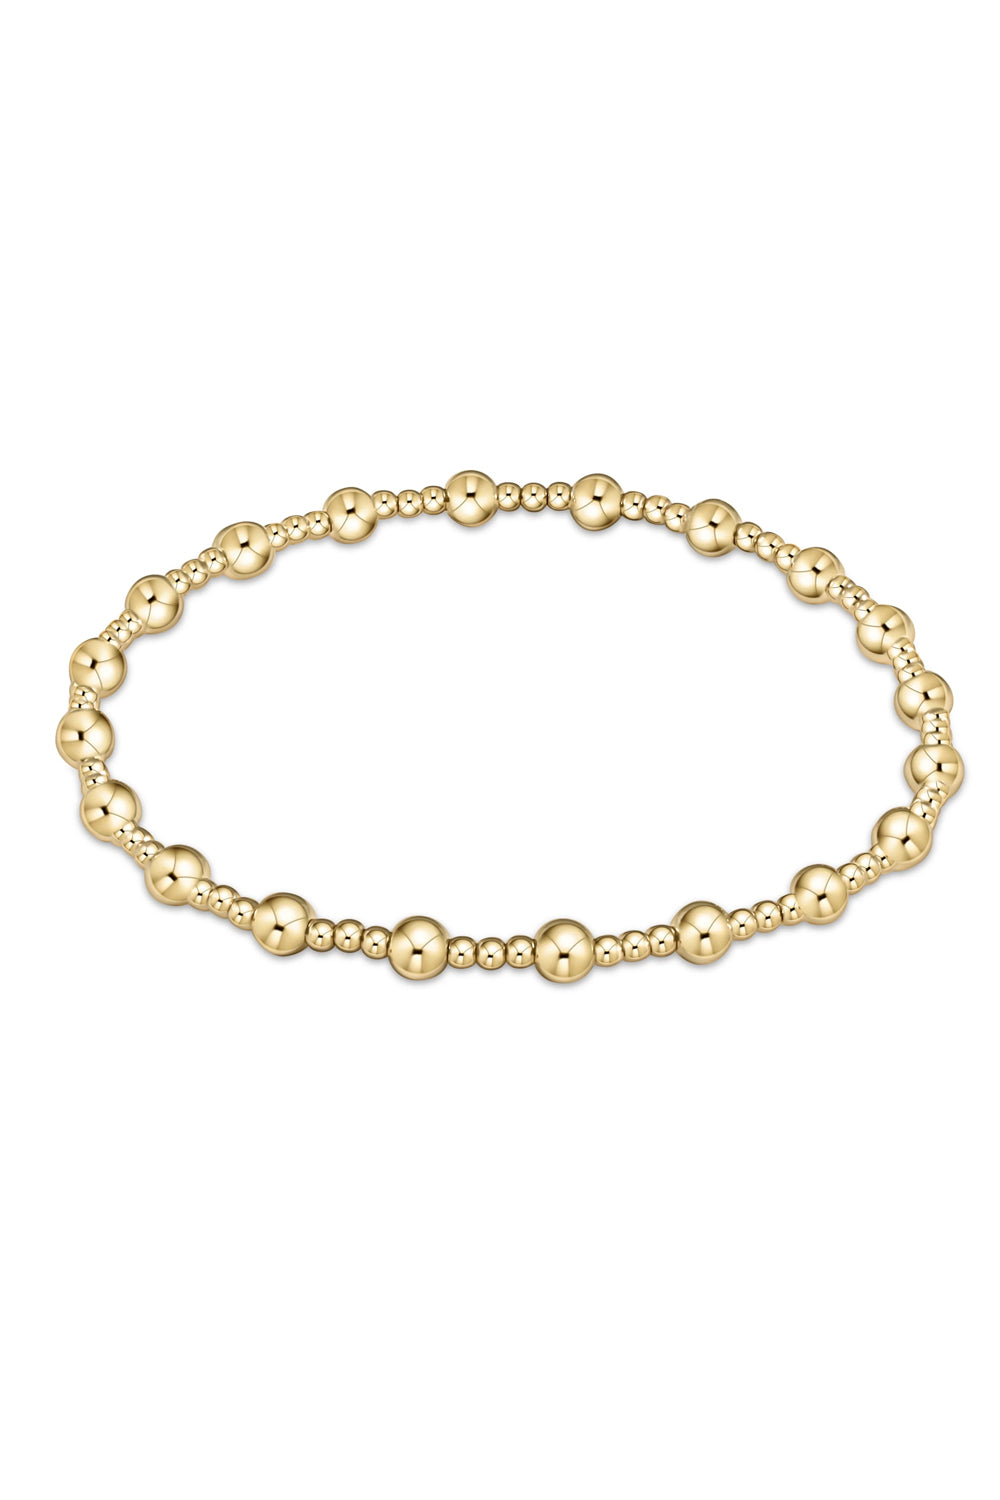 enewton: Classic Sincerity Pattern 4mm Bead Bracelet - Gold | Makk Fashions